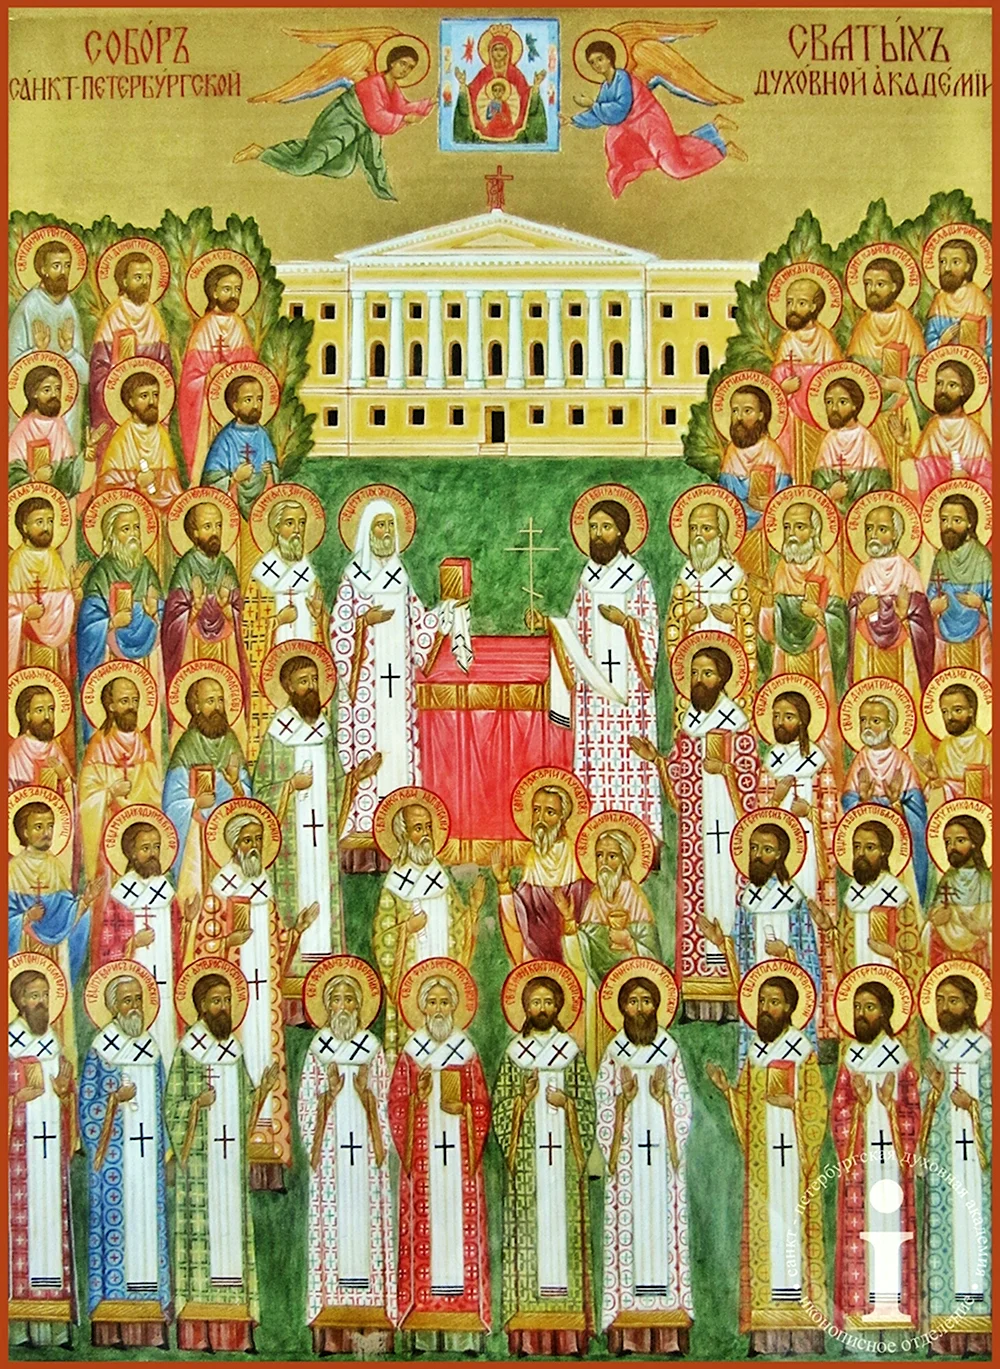 Собор Санкт-петербургских святых икона